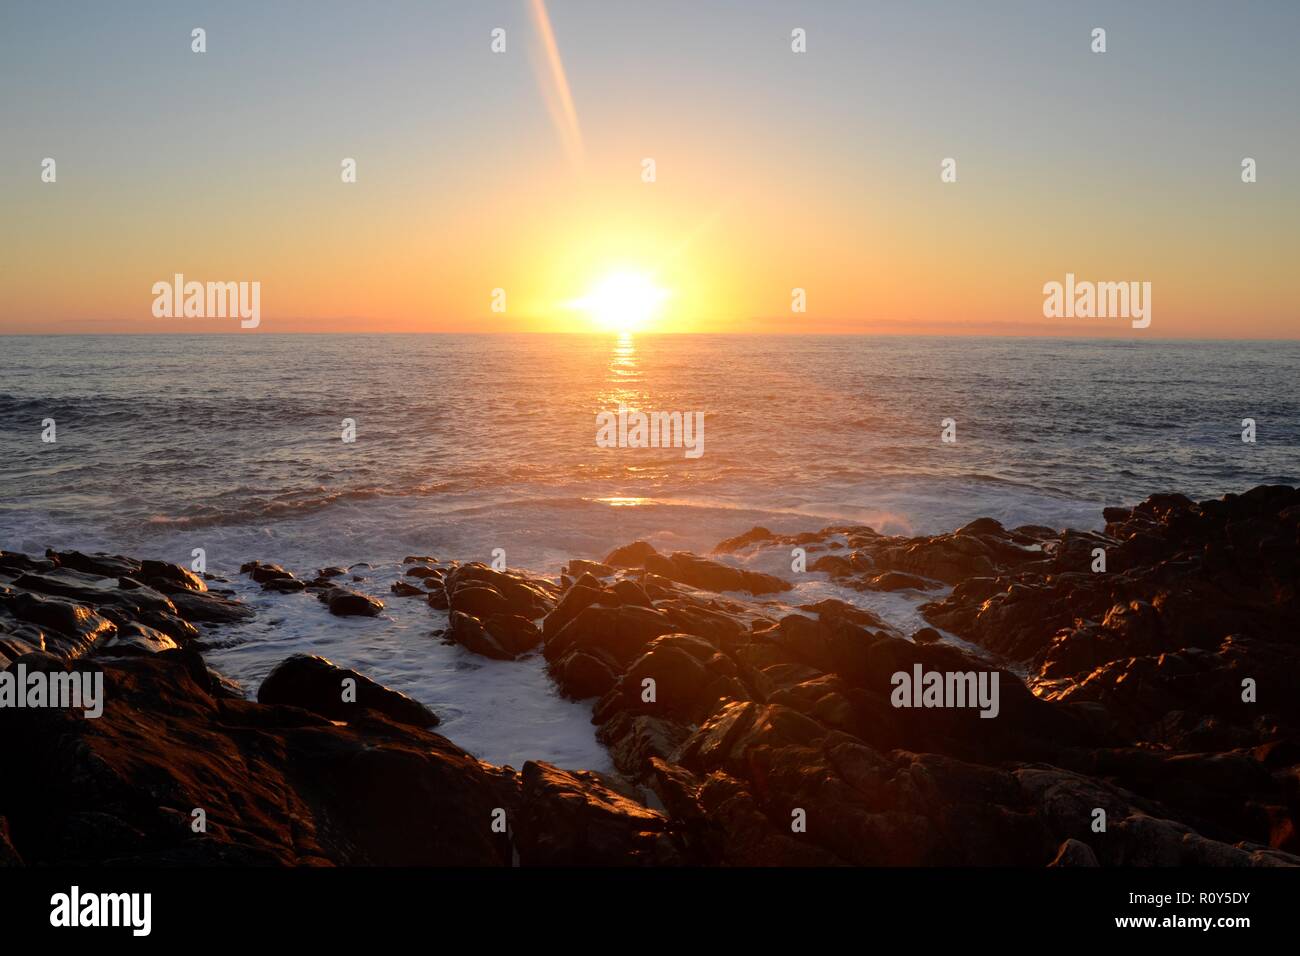 Sonnenuntergang auf dem Meer - Western Australia - Sonne, blauen Wasser, Felsen, Wellen und Orange. Stockfoto